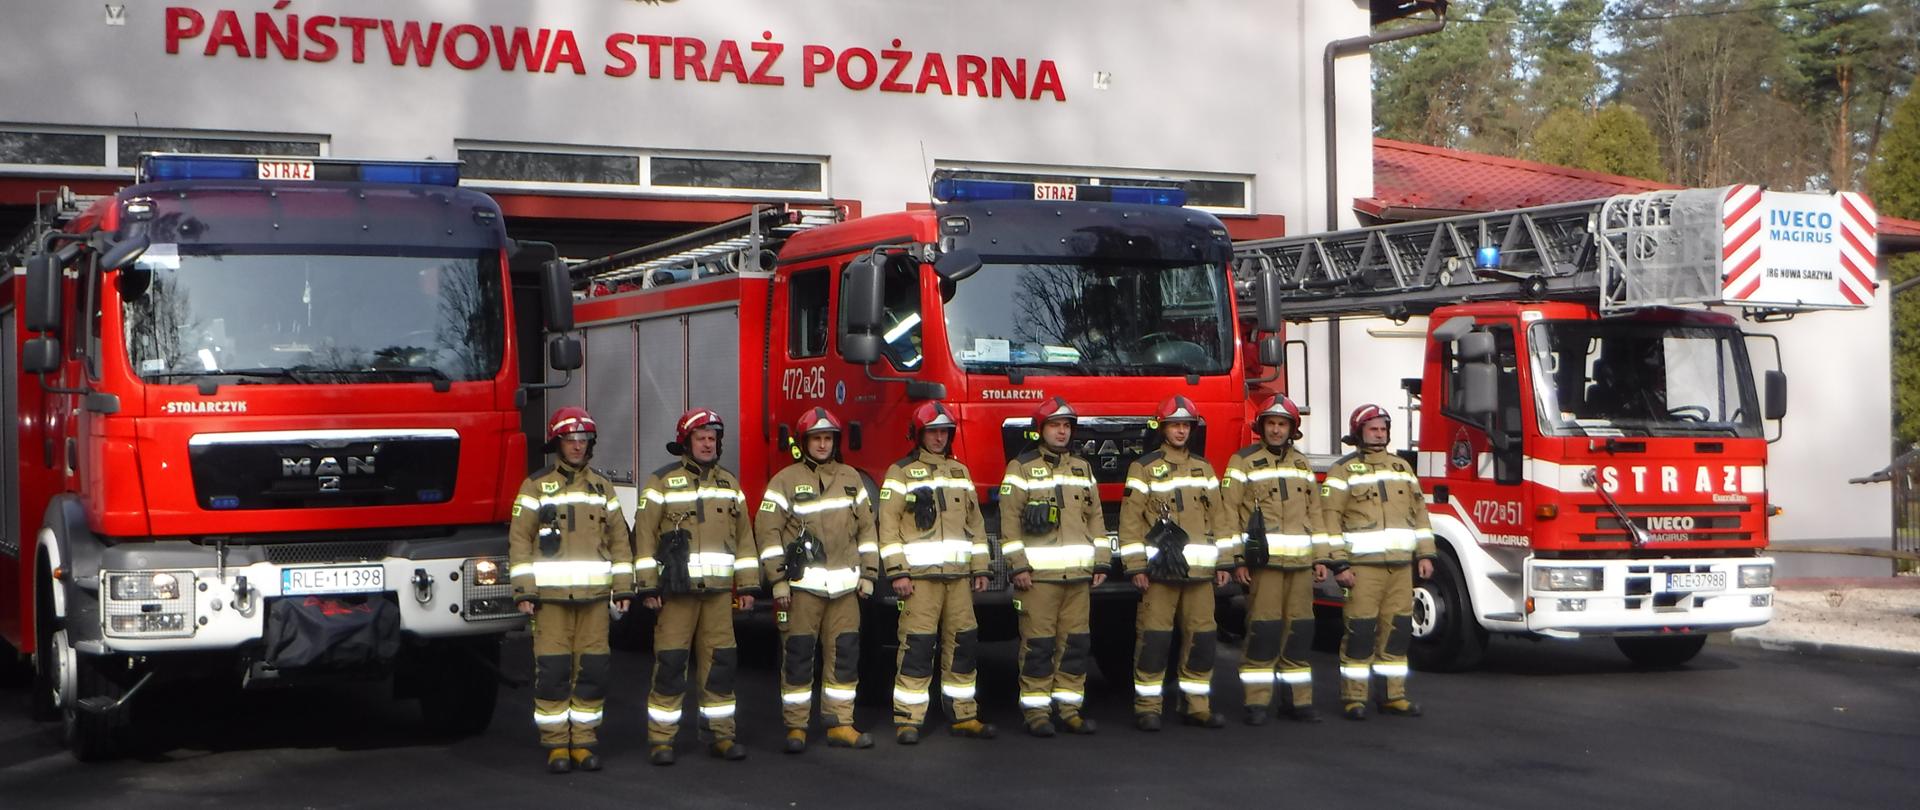 Na zdjęciu widzimy strażaków, którzy stoją na tle pojazdów pożarniczych w tle widać budynek jednostki ratowniczo gaśniczej. 